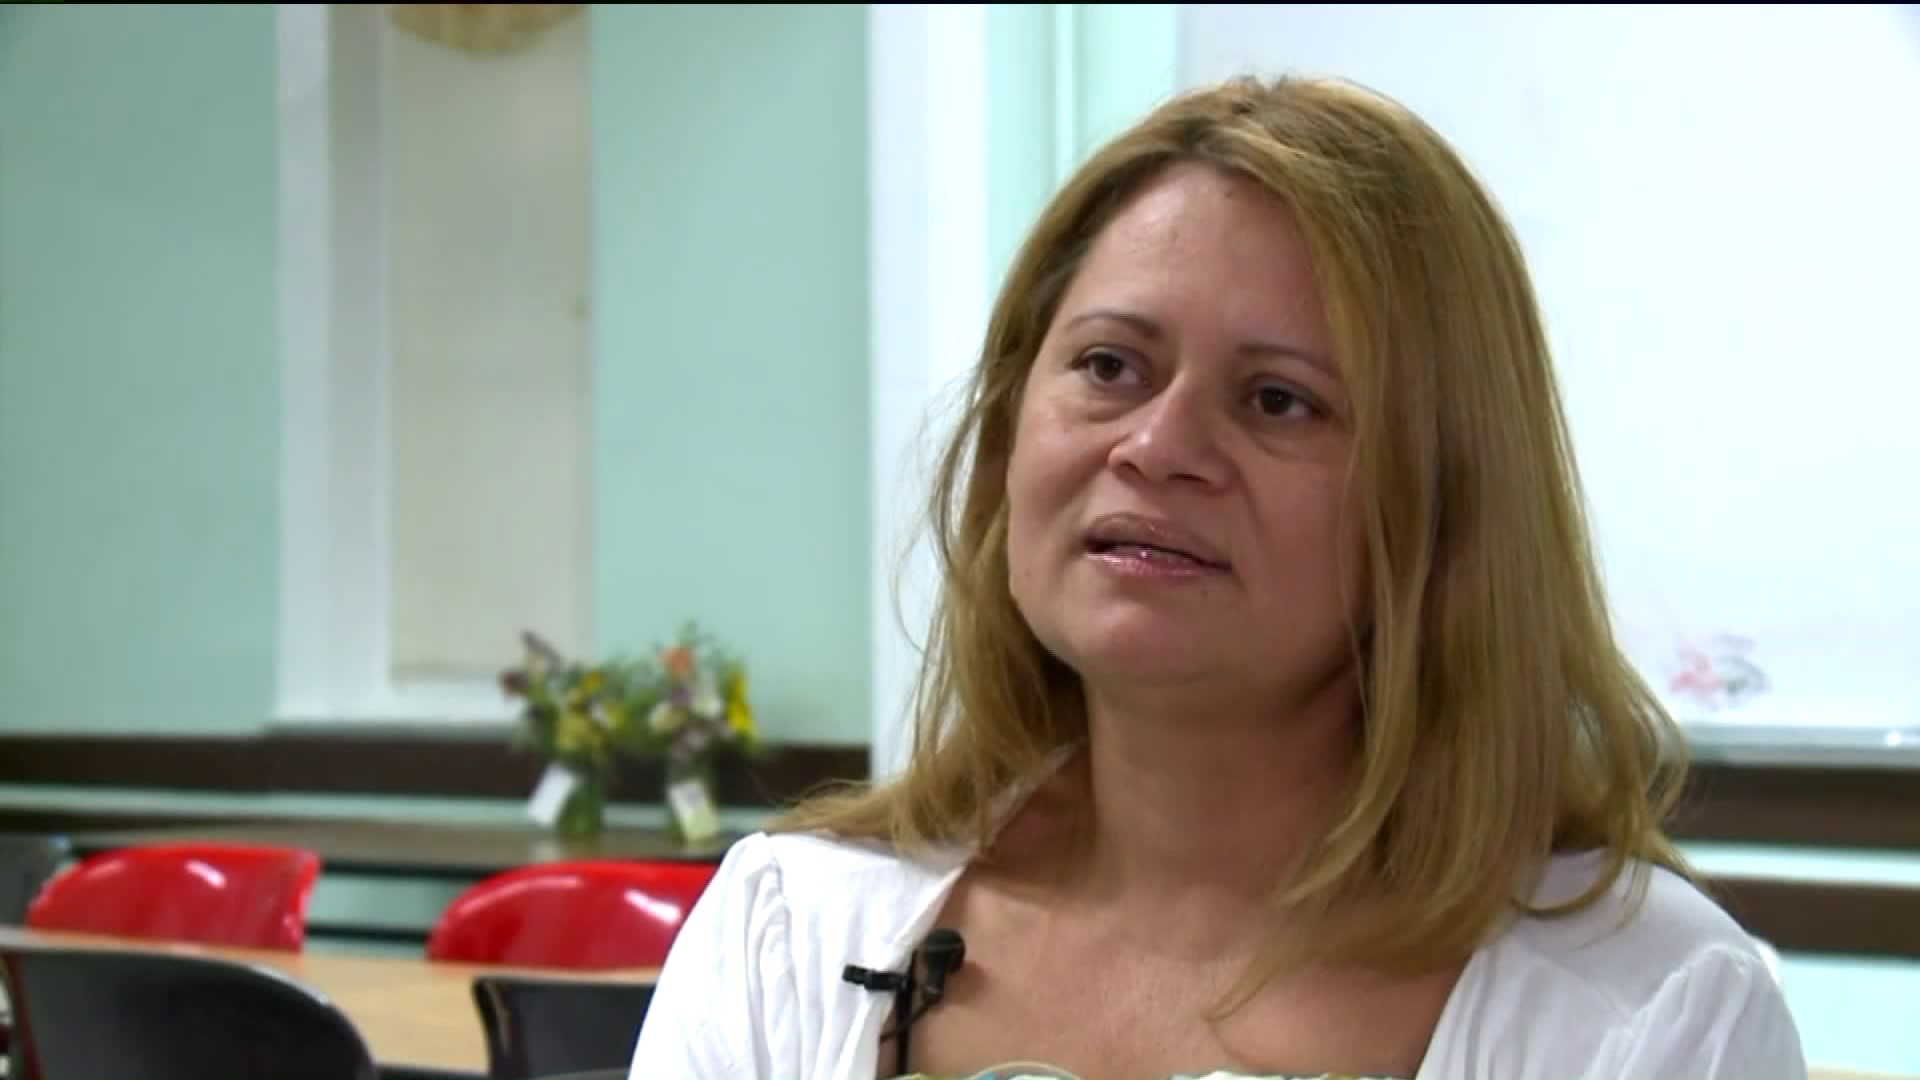 Norwalk mother fighting deportation, speaks out